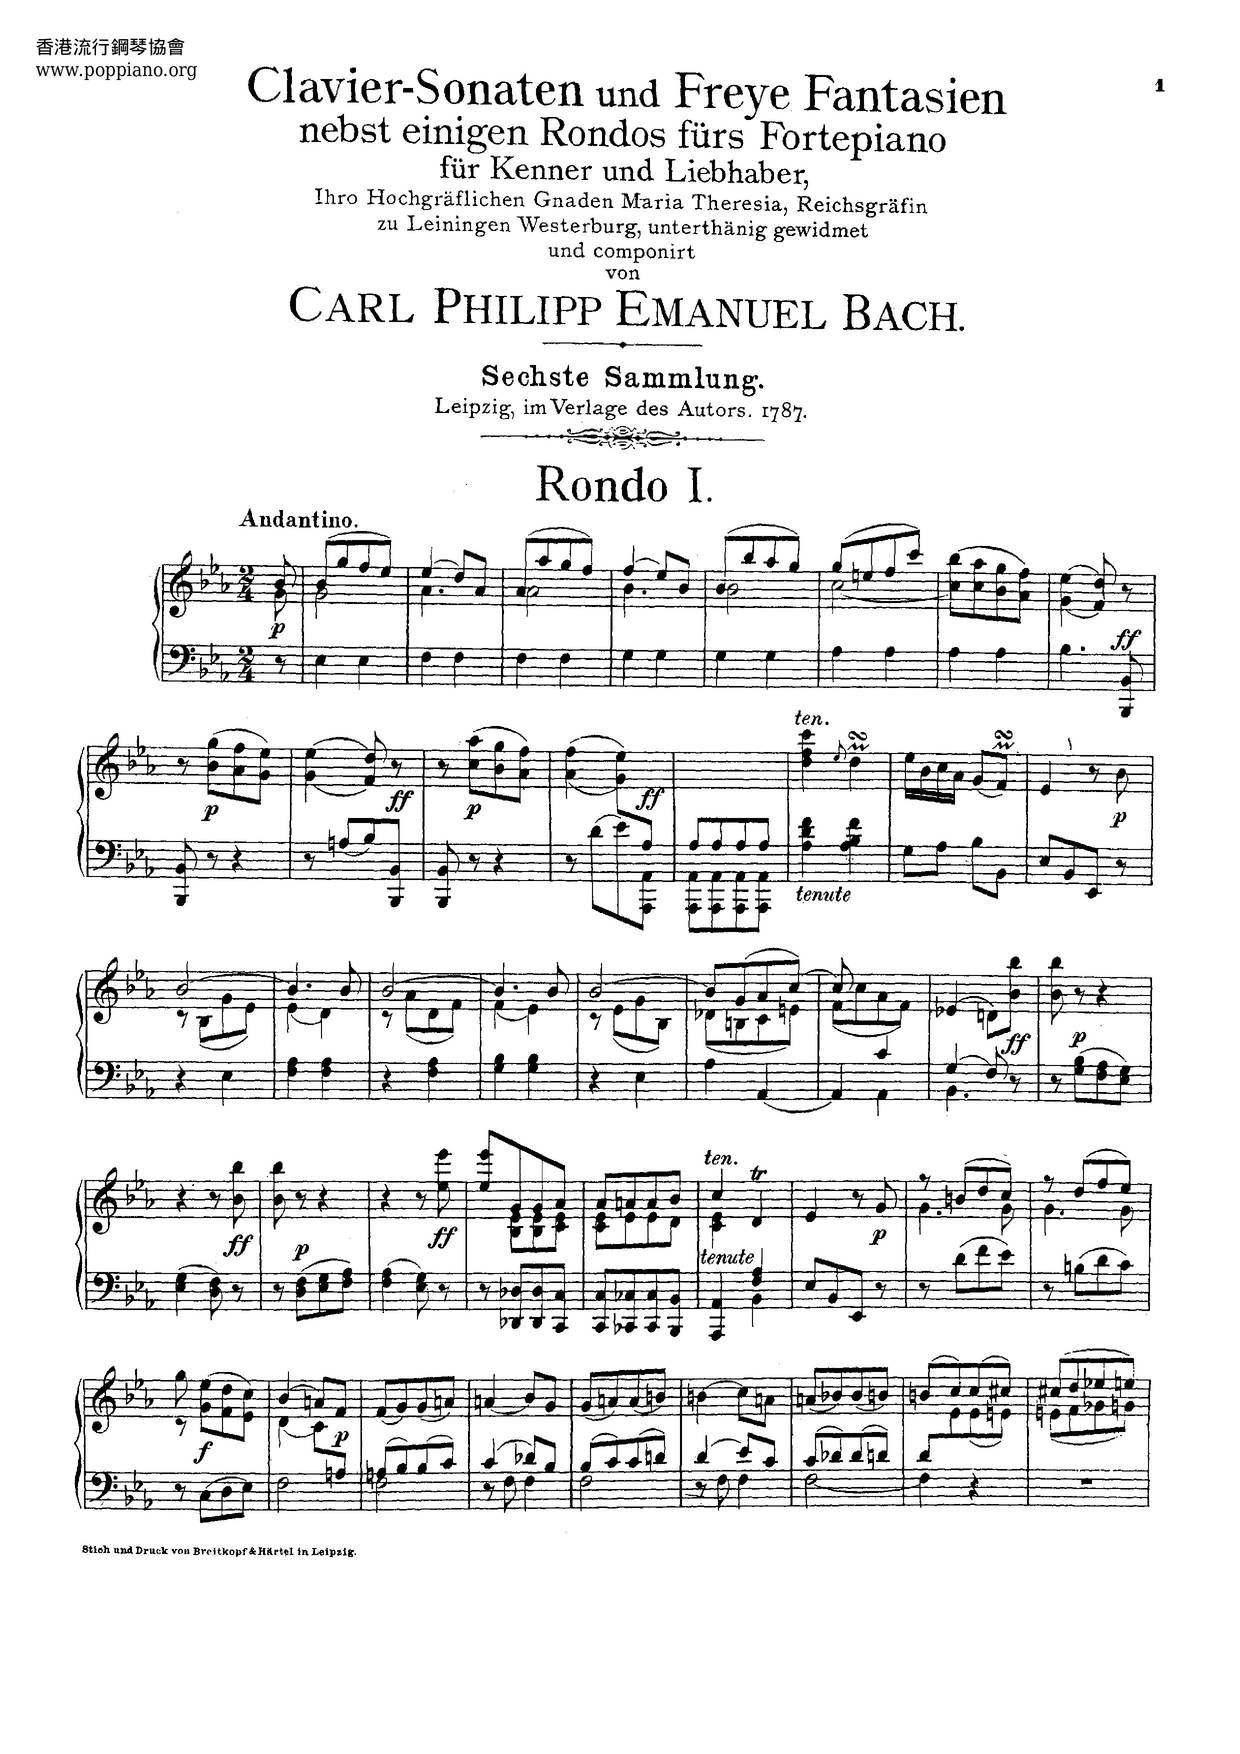 Clavier-Sonaten Für Kenner Und Liebhaber, Wq.55-59, 61琴譜